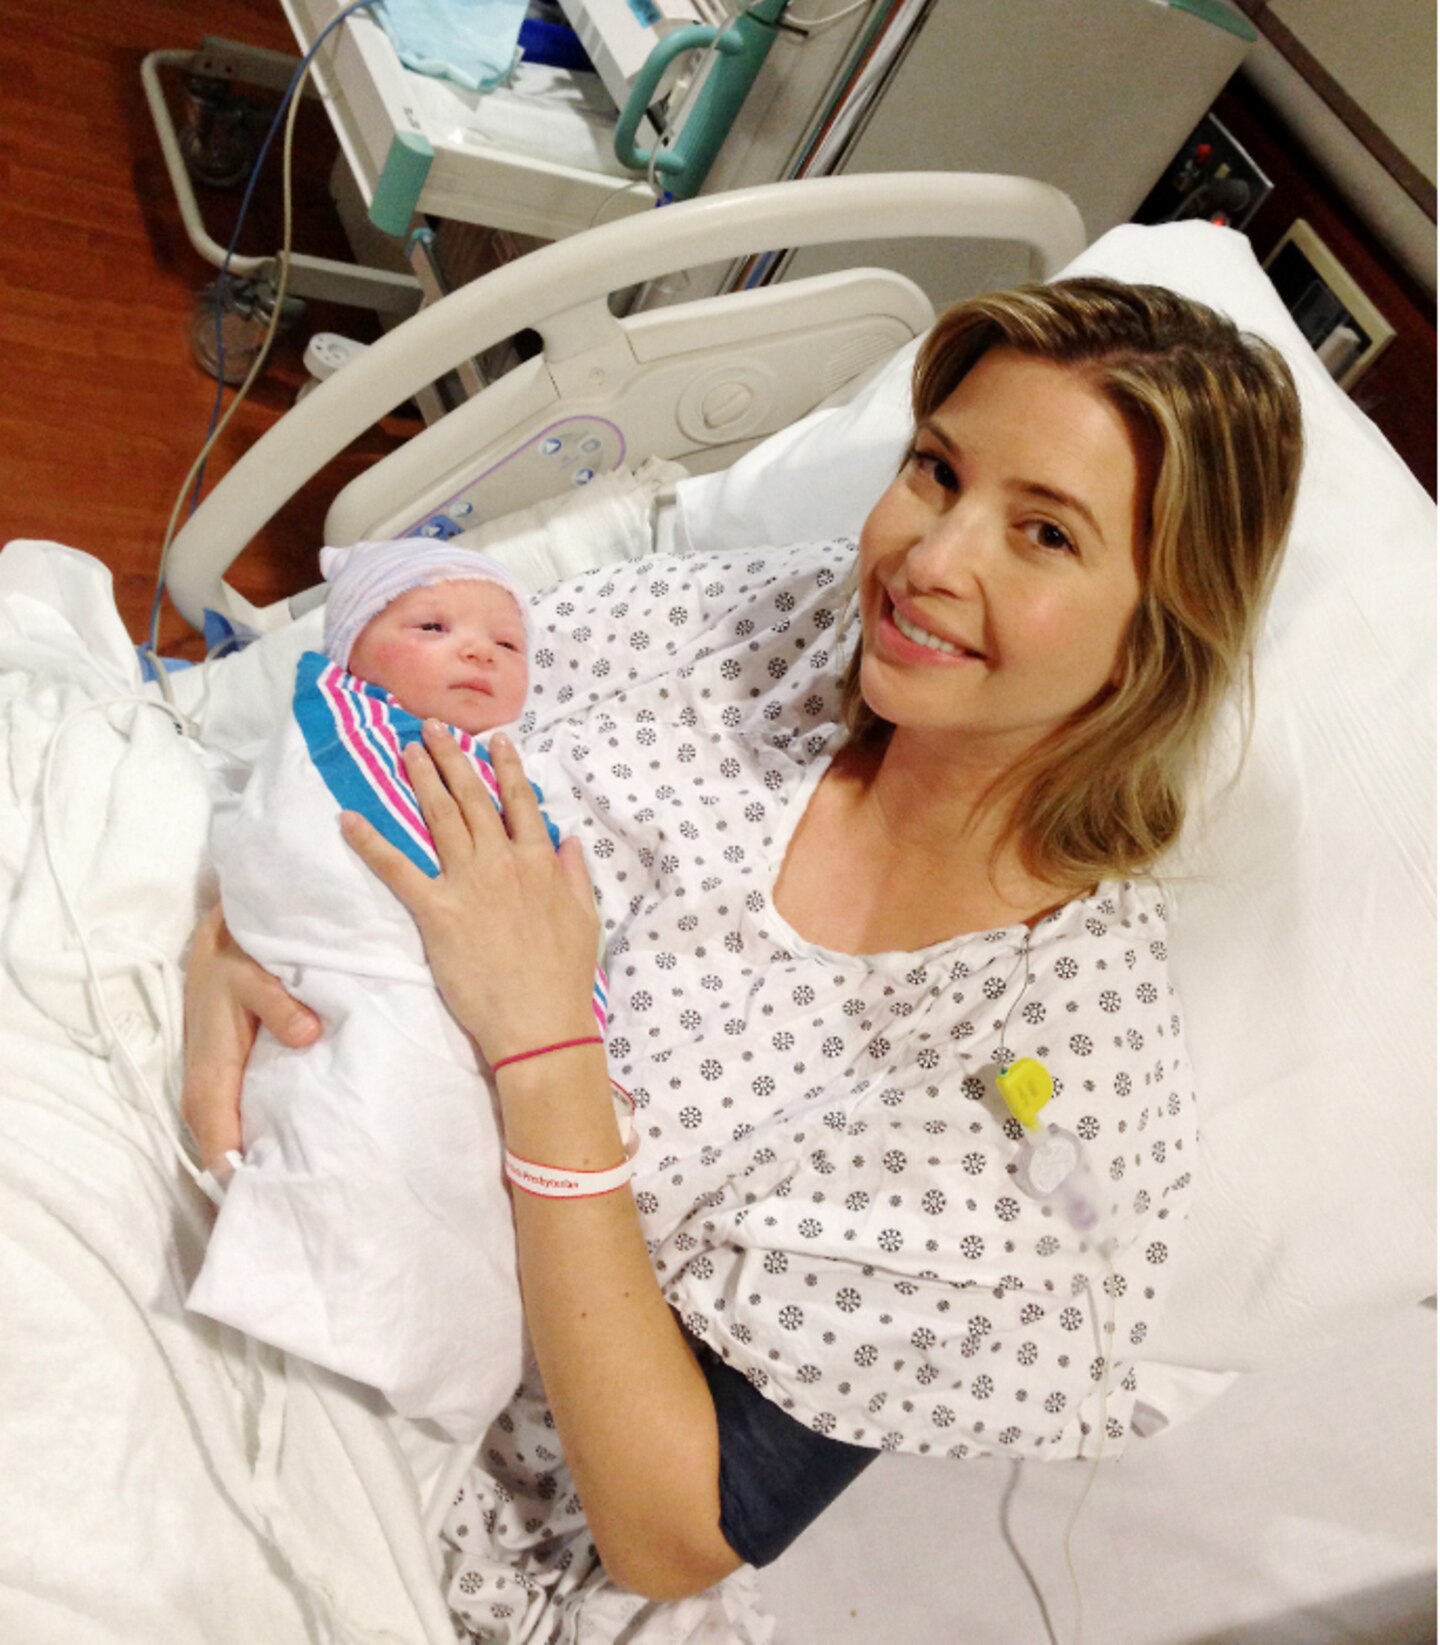 Oktober 2013: Ivanka Trump und ihr Ehemann Jared Kushner bekamen am 14. Oktober männlichen Familienzuwachs. Nach Töchterchen Arabella, die 2011 geboren wurde, ist es bereits ihr zweites gemeinsames Kind.